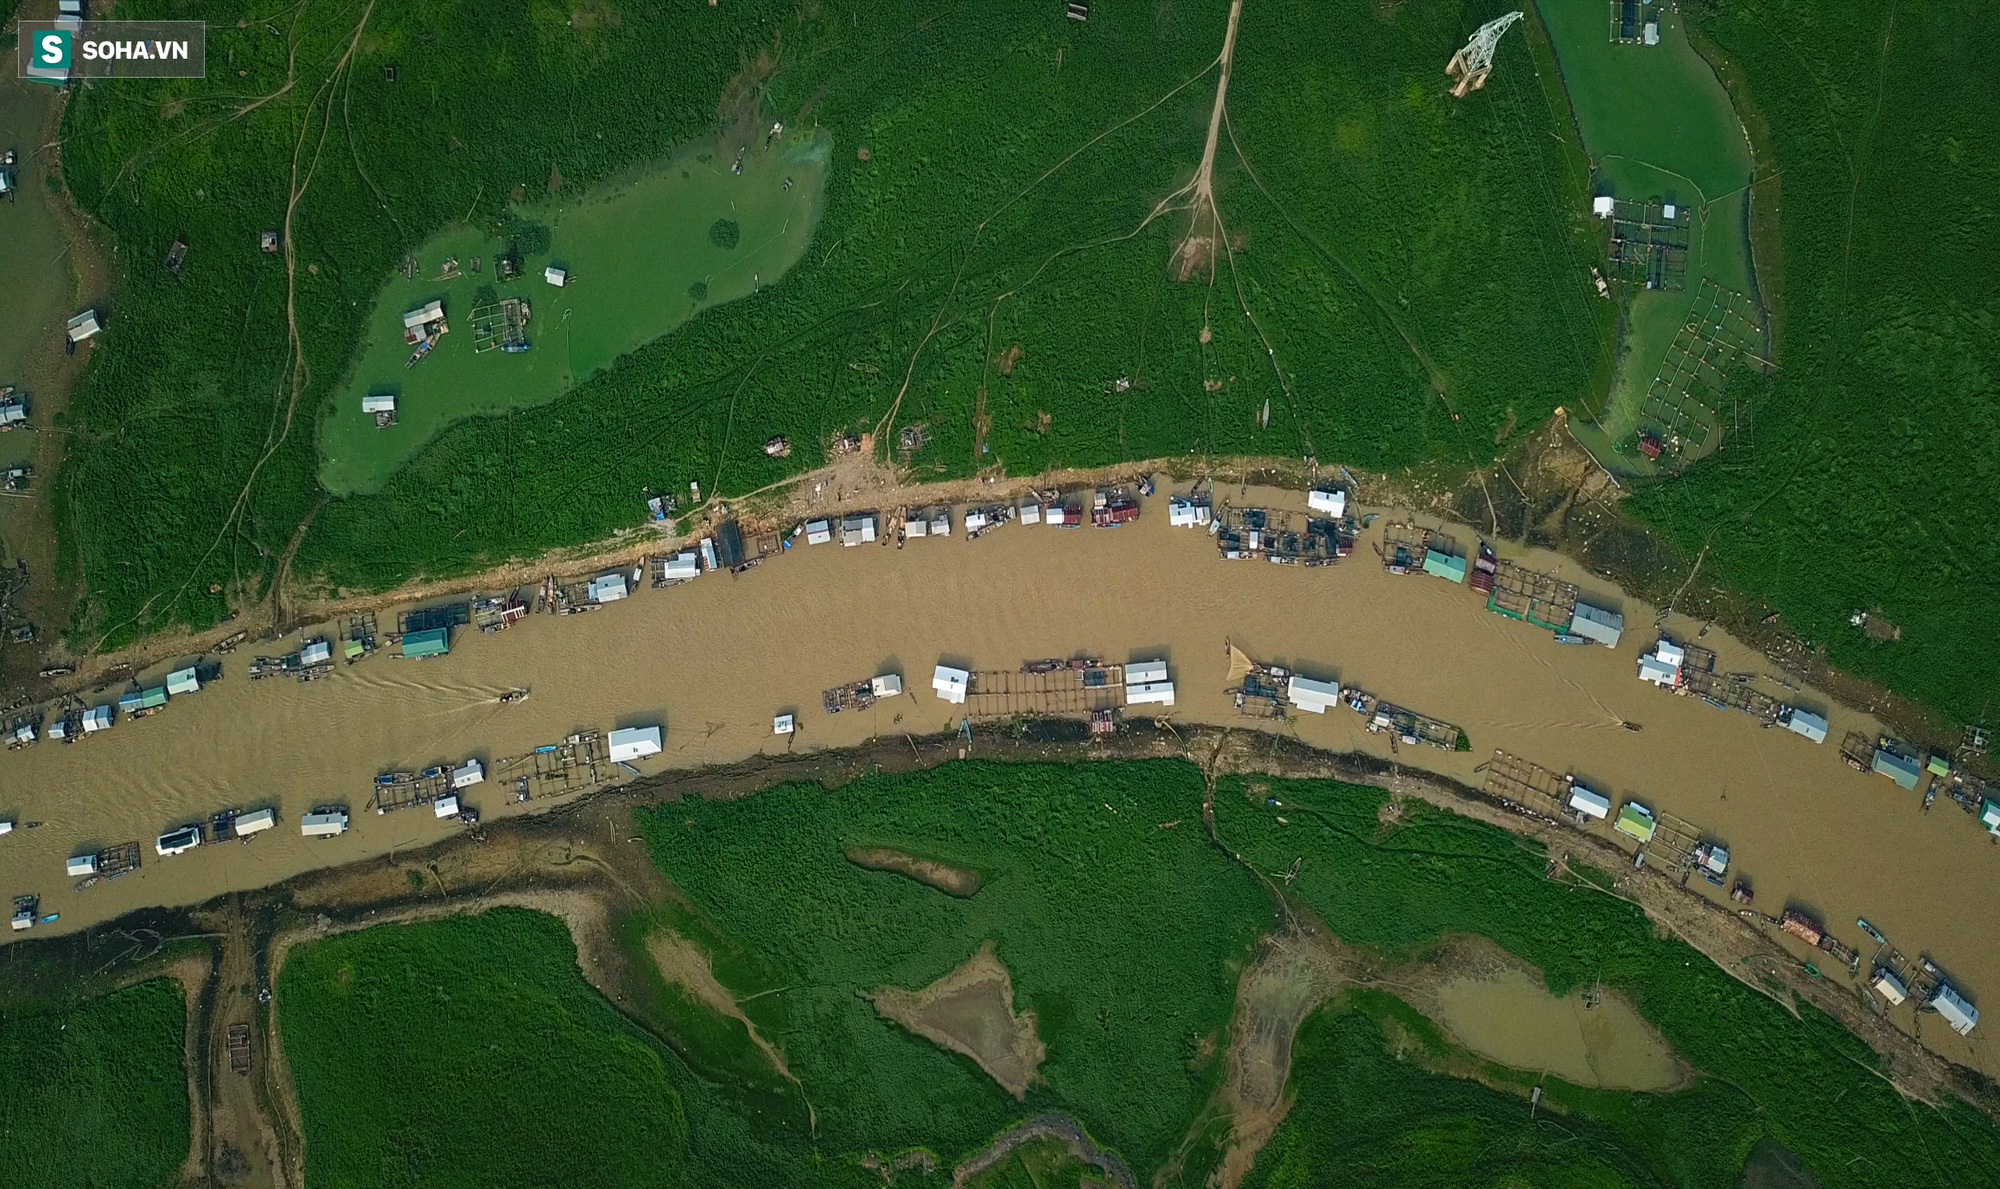 [ẢNH] 200 nhà bè mắc cạn giữa thảm cỏ xanh mướt ở lòng hồ Trị An - Ảnh 9.